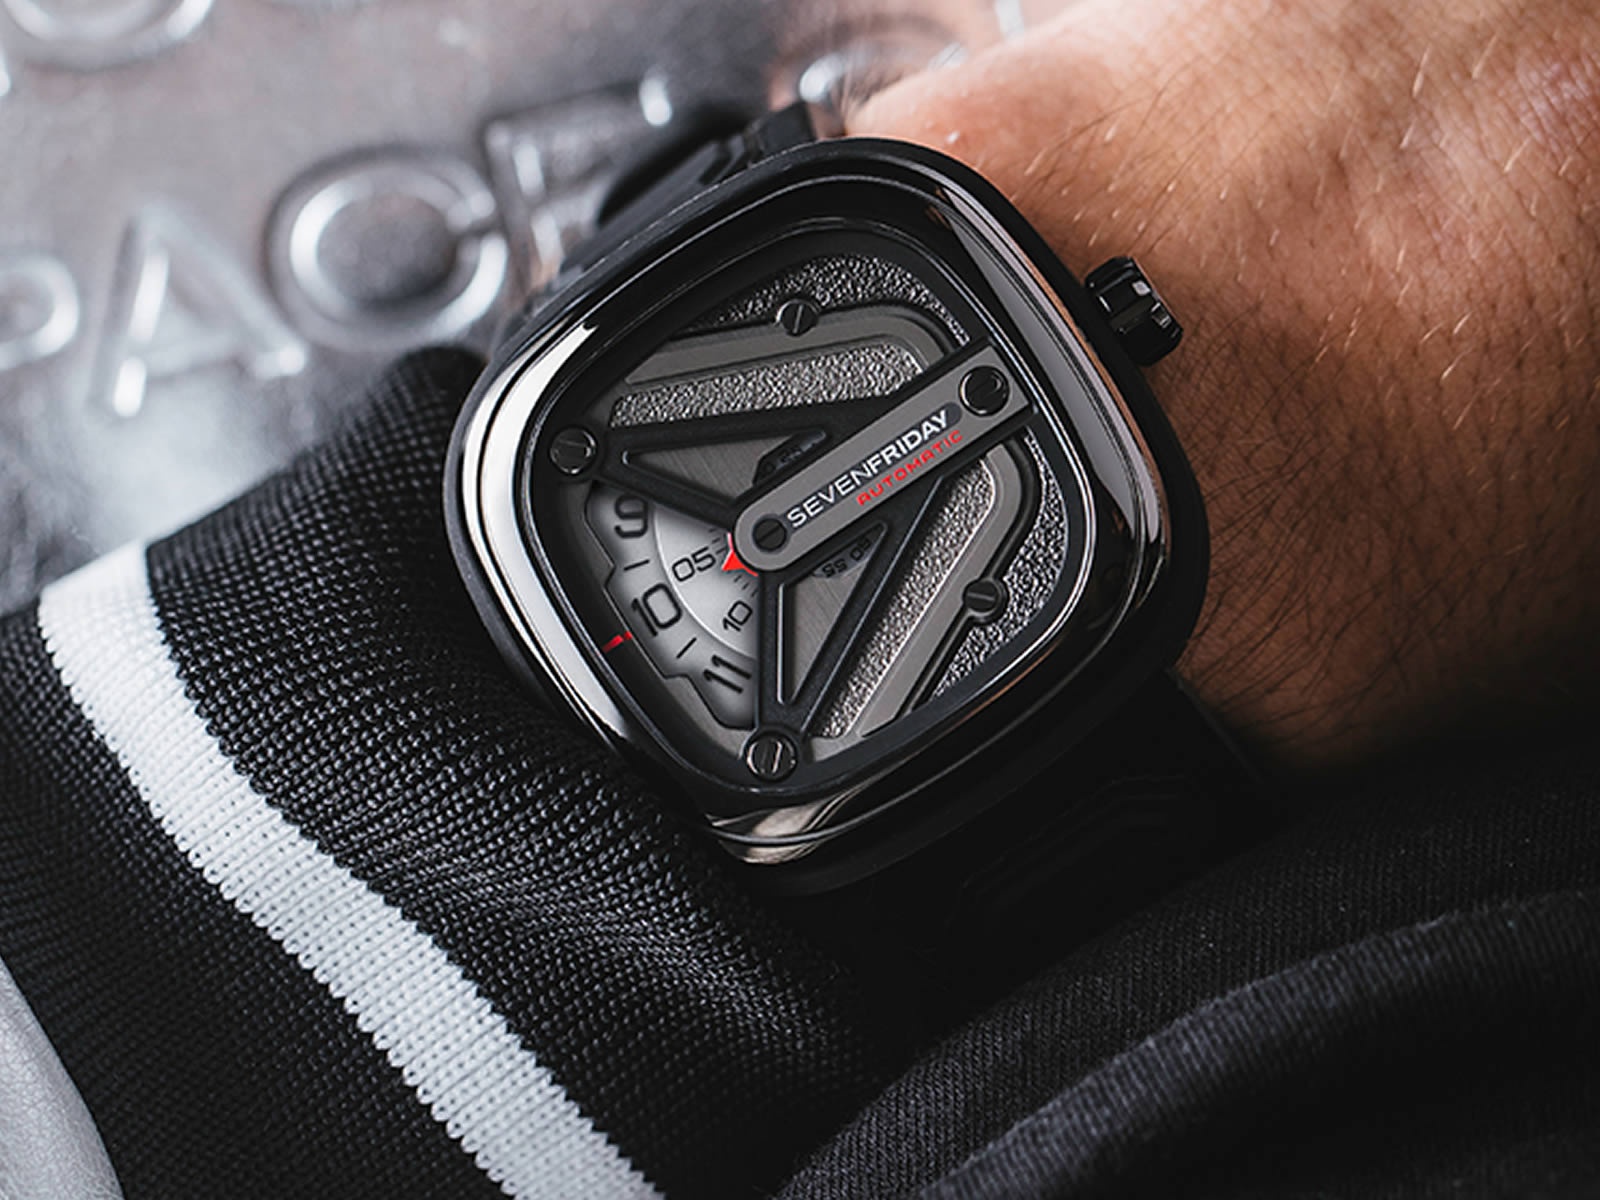 Sevenfriday M-Series mang thiết kế của tương lai, cơ cấu hiển thị giờ độc đáo khiến mẫu đồng hồ hấp dẫn nhiều người.